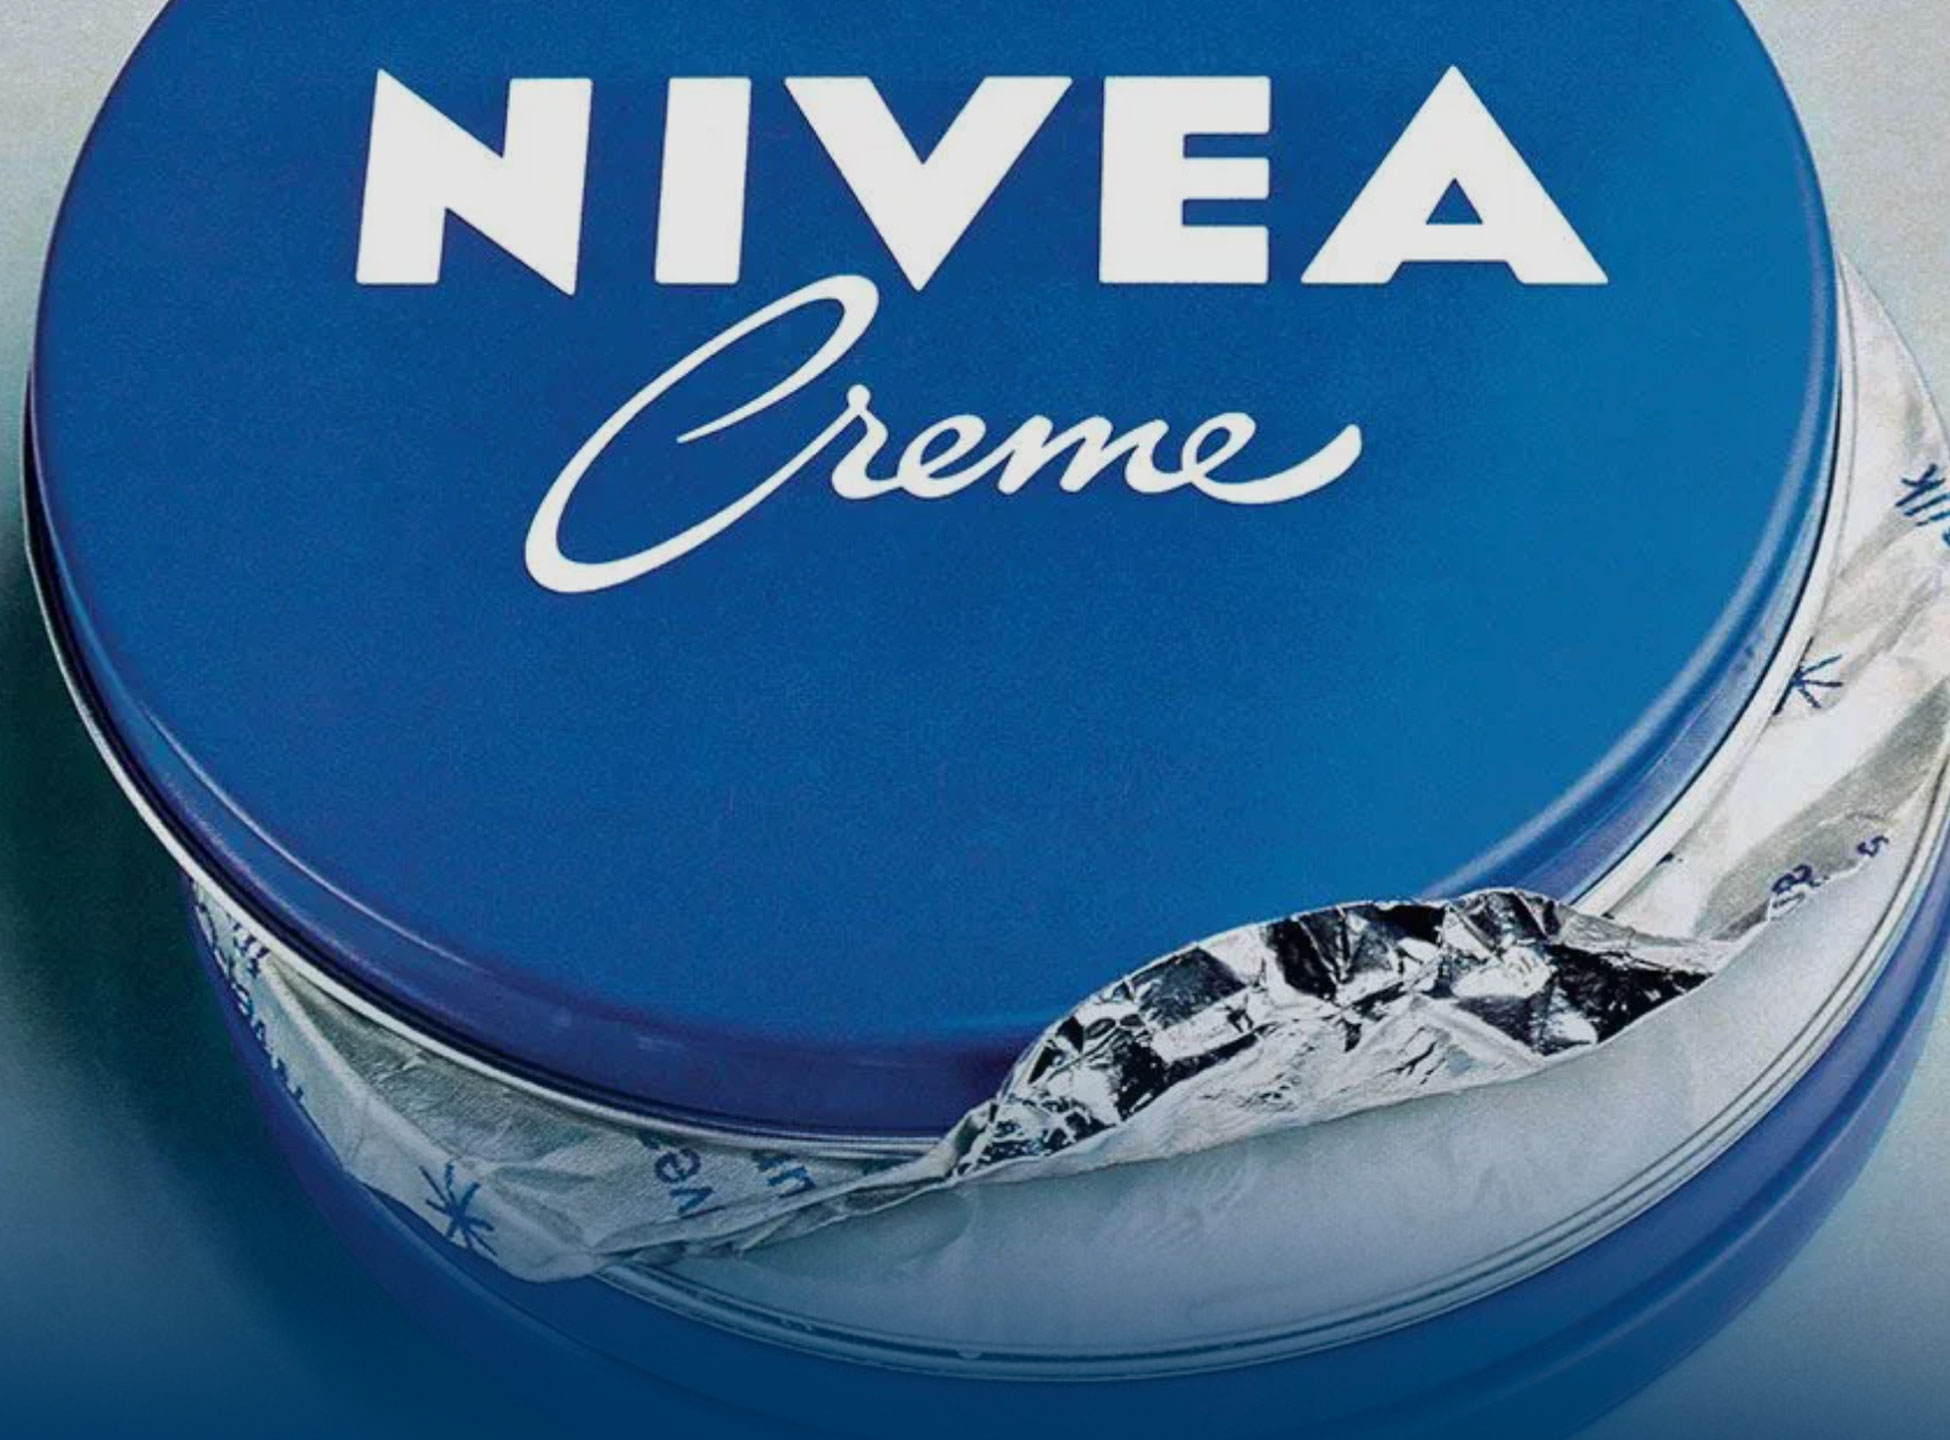 Началось все с пластыря, или История синей банки крема Nivea